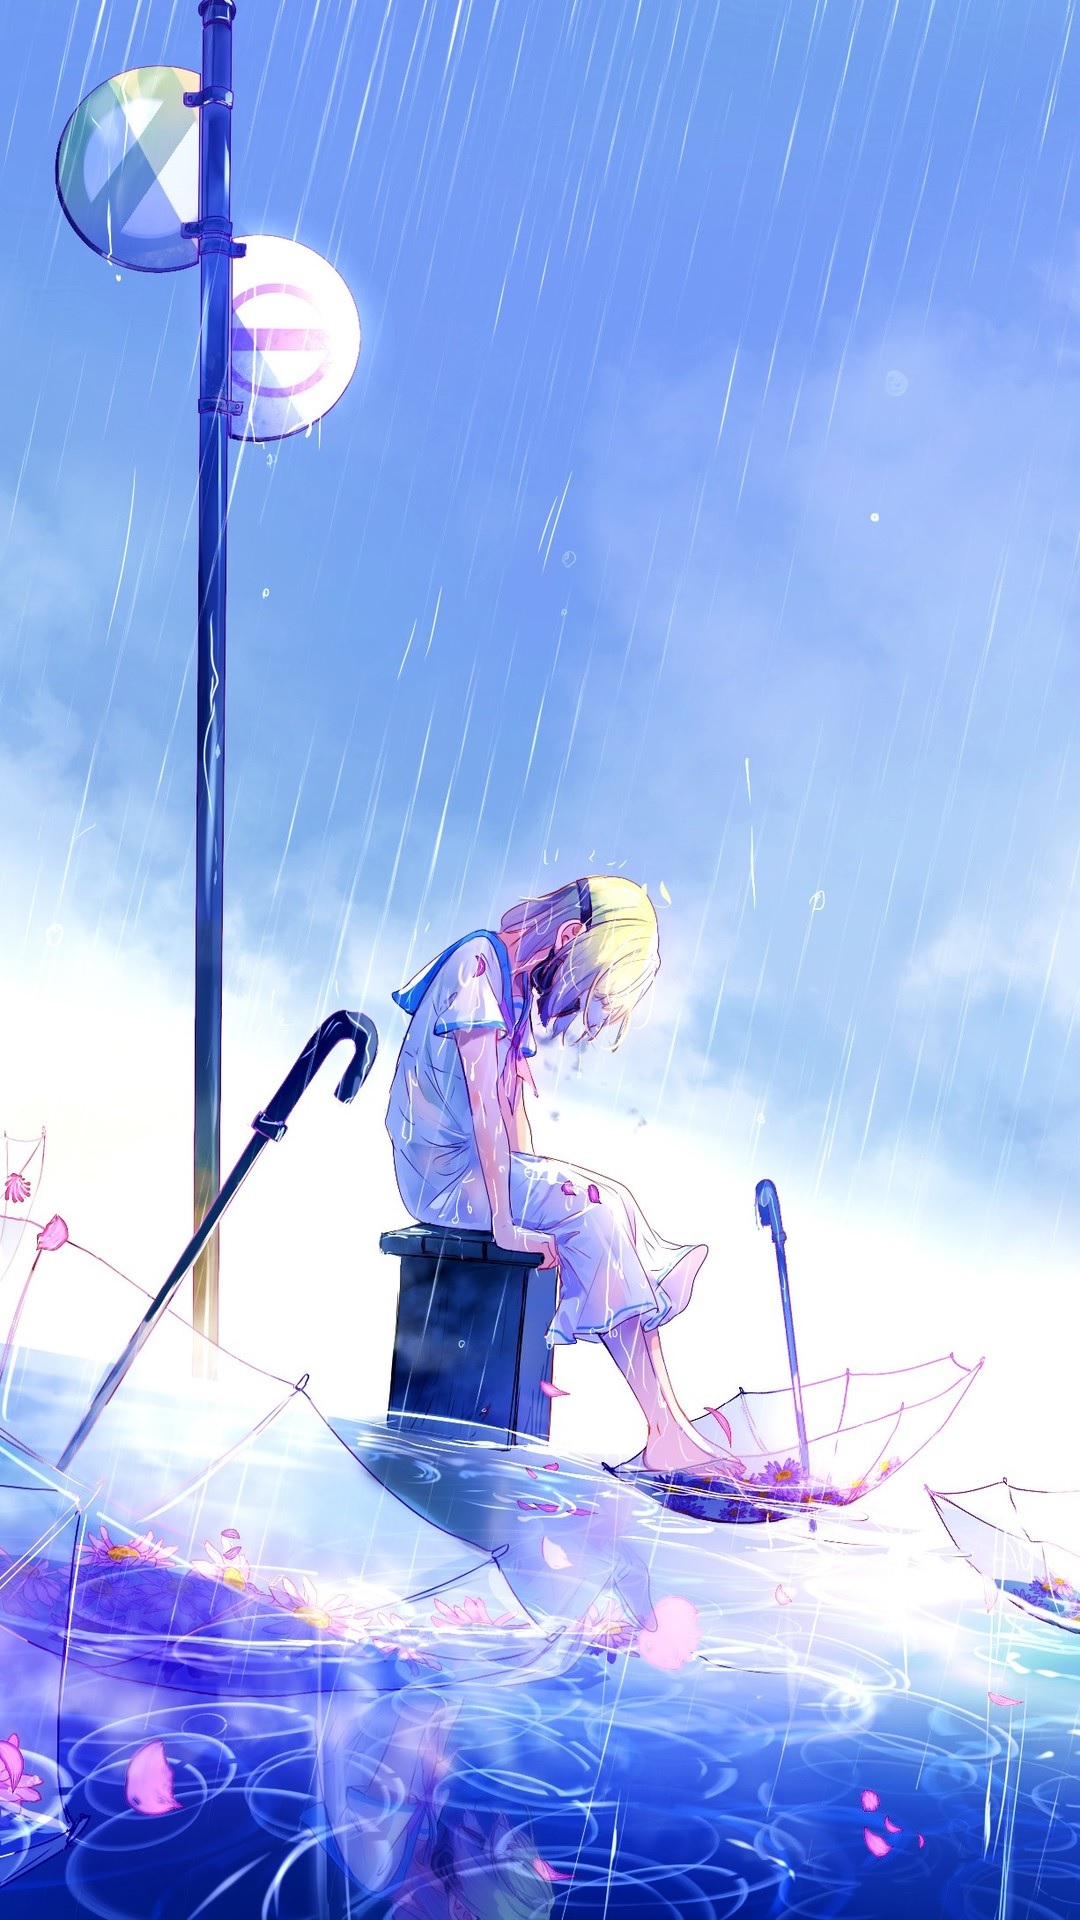 Hình anime mưa buồn, cô đơn